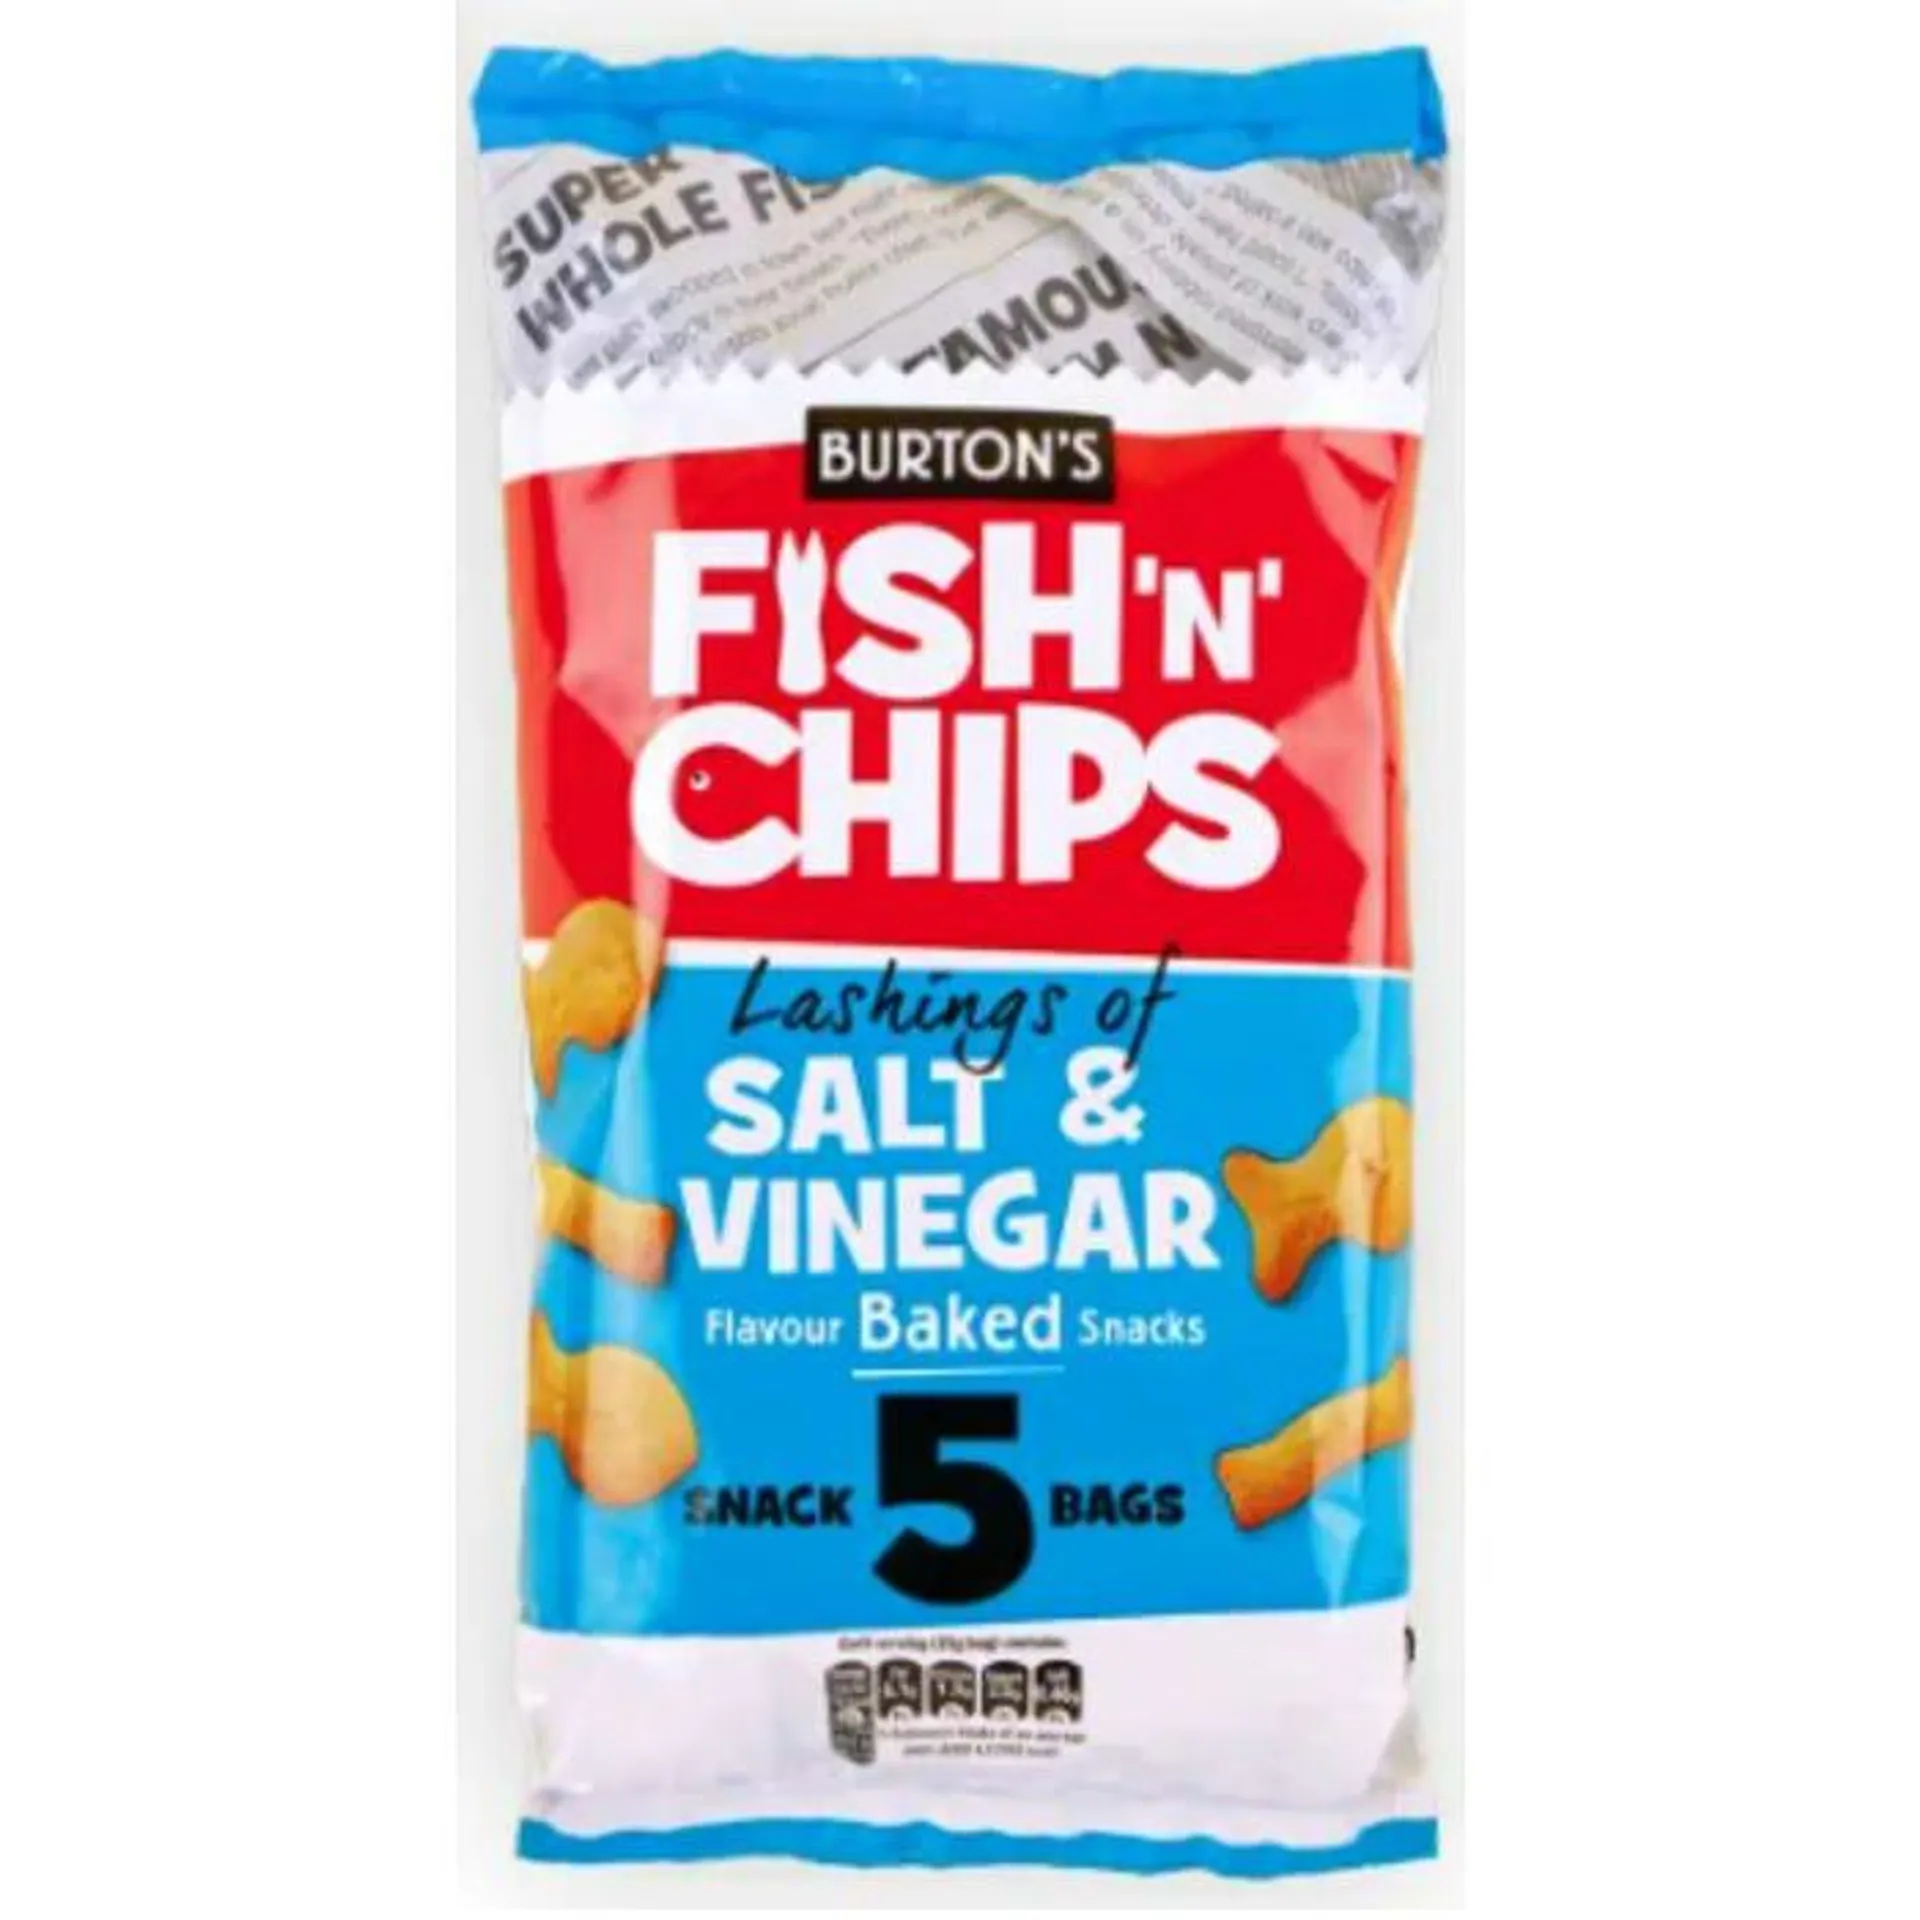 Burton's Fish 'N' Chips Salt & Vinegar Baked Snacks, 25g (Pack of 5)